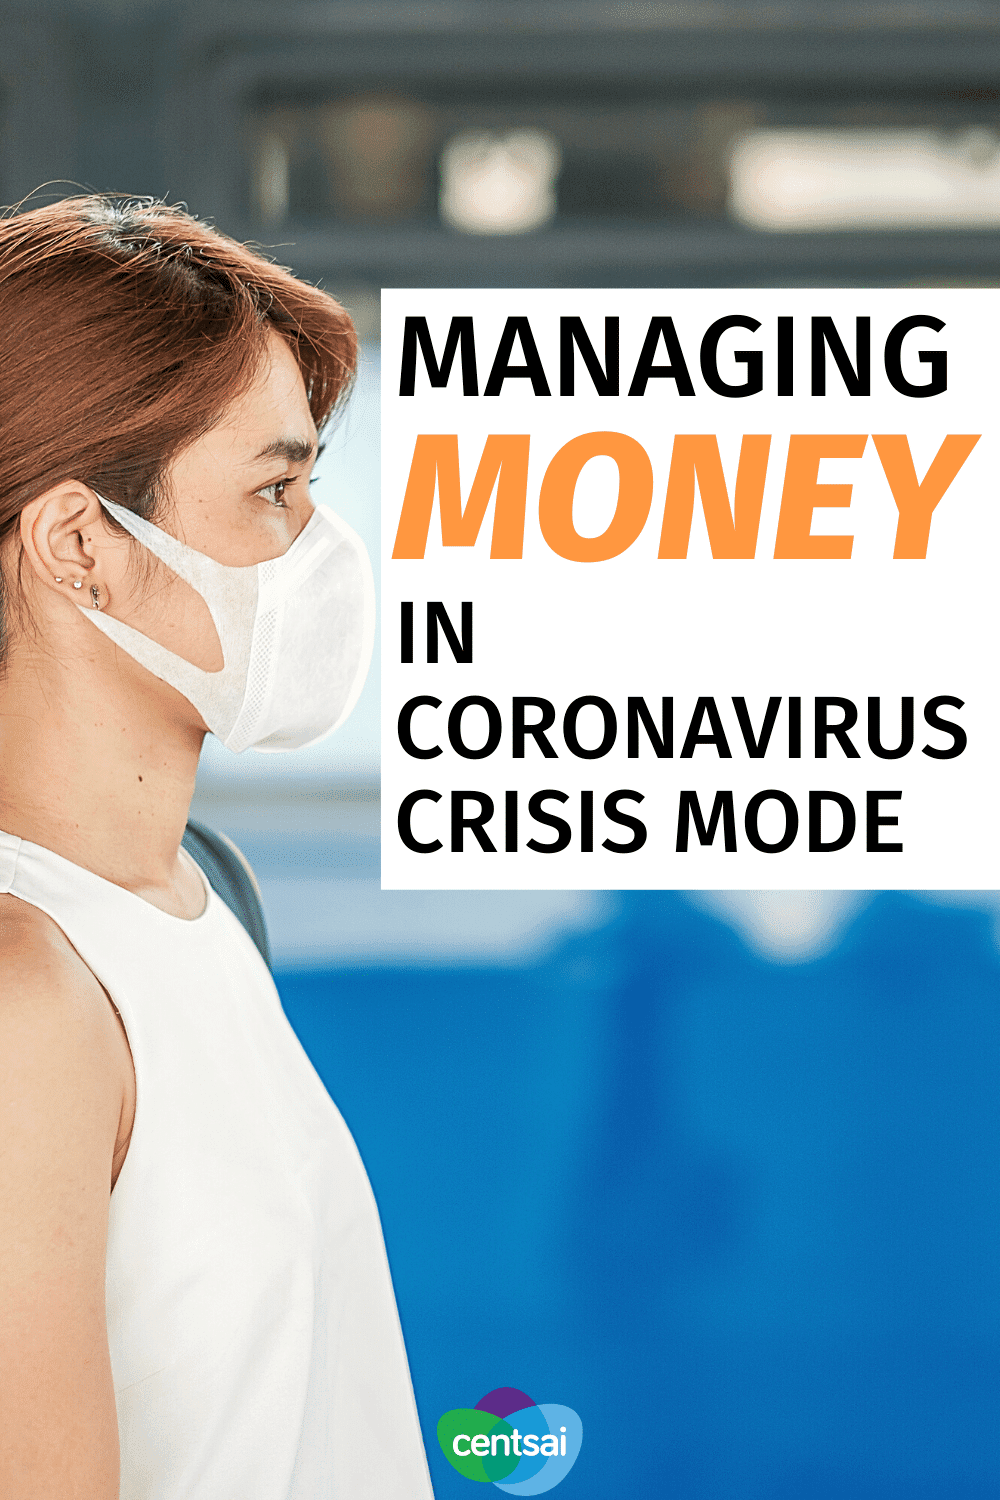 Managing Money in Coronavirus Crisis Mode